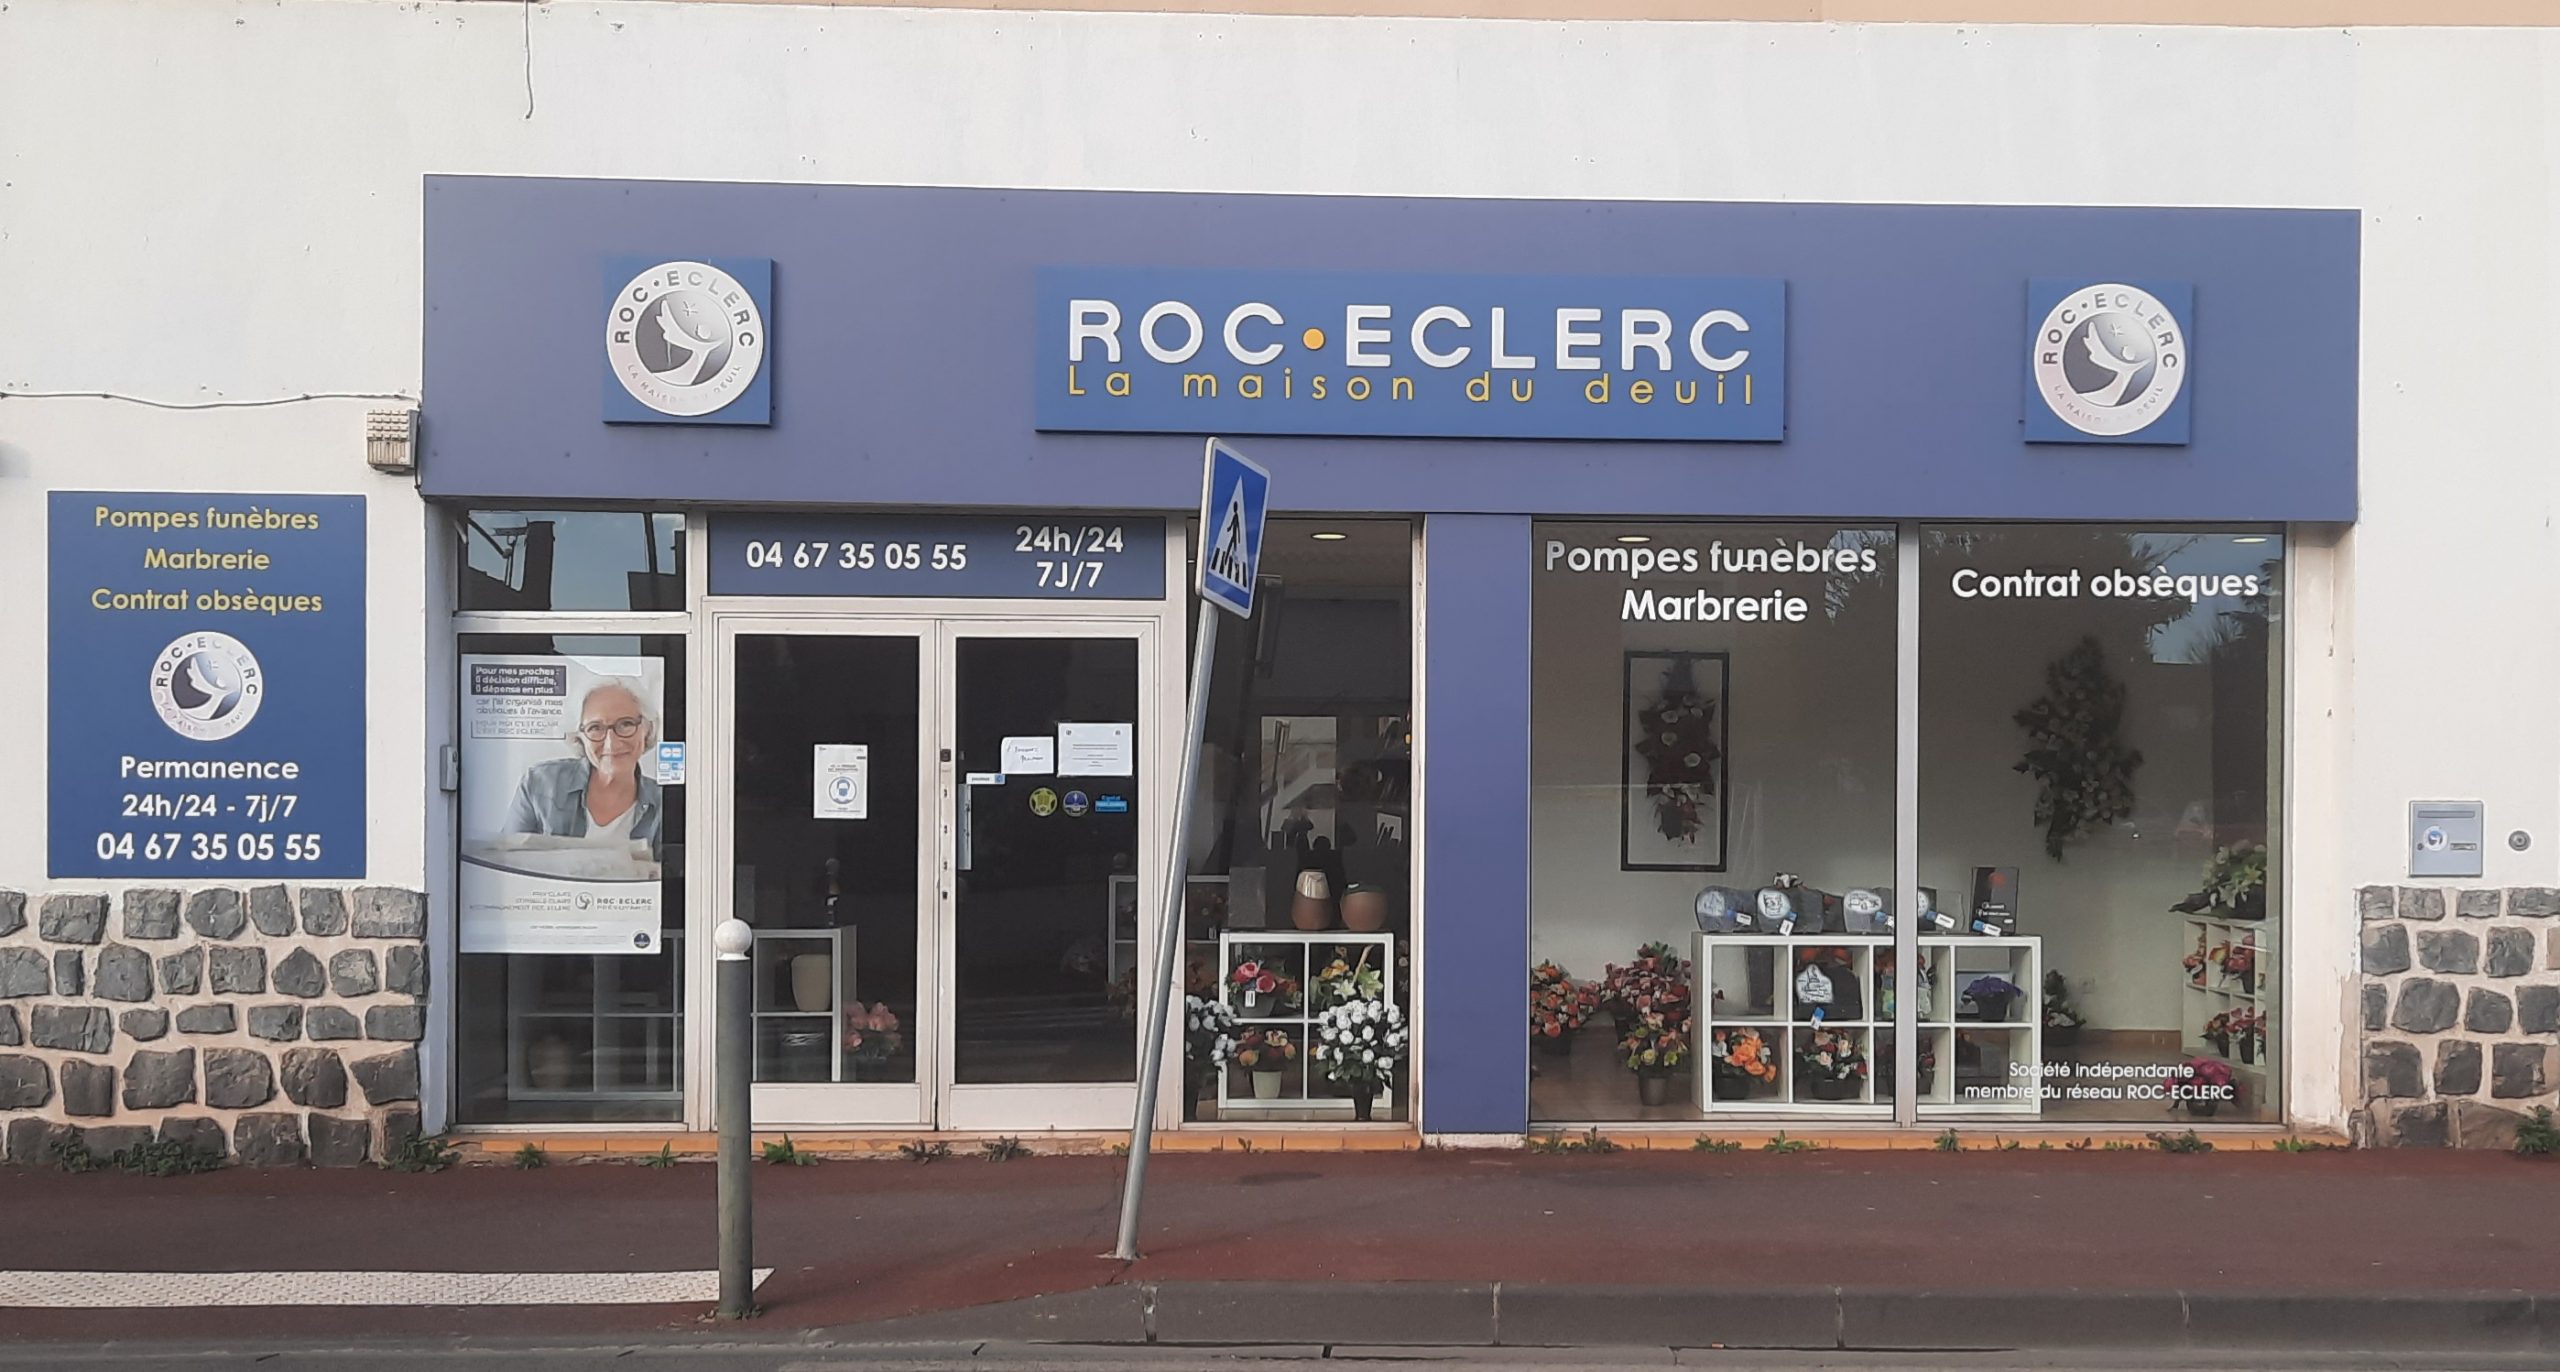 Agence de pompes funèbres ROC ECLERC à Agde